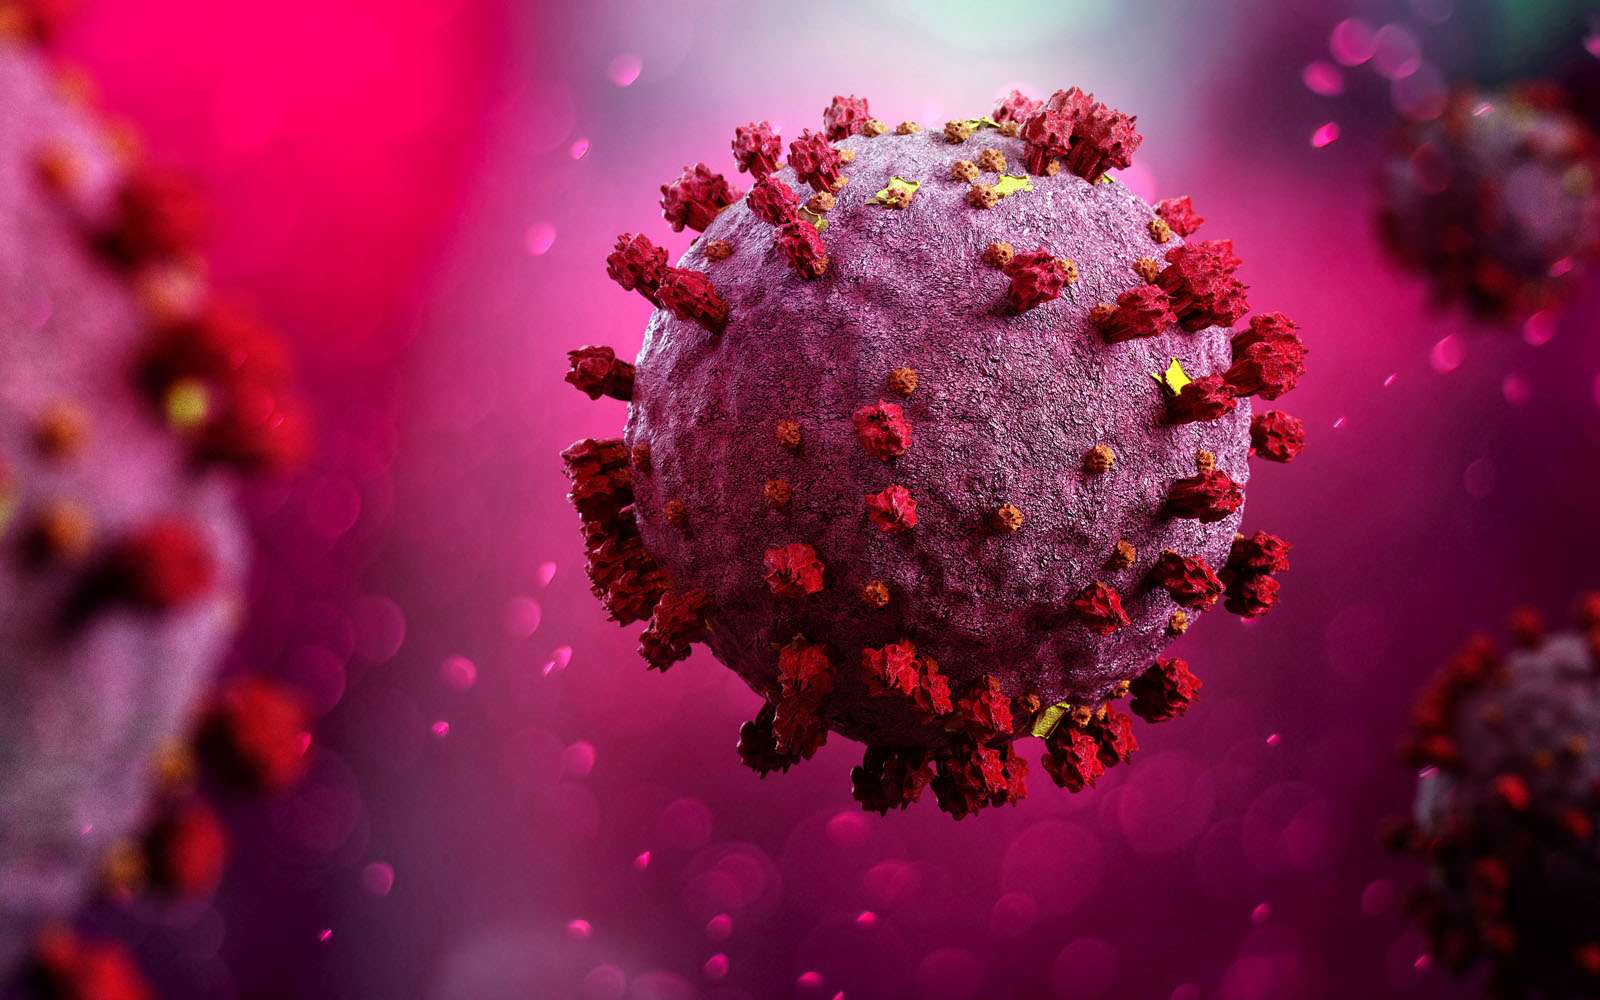 La protéine S recouvre le coronavirus et lui permet d'infecter les cellules humaines. © Production Perig, Adobe Stock